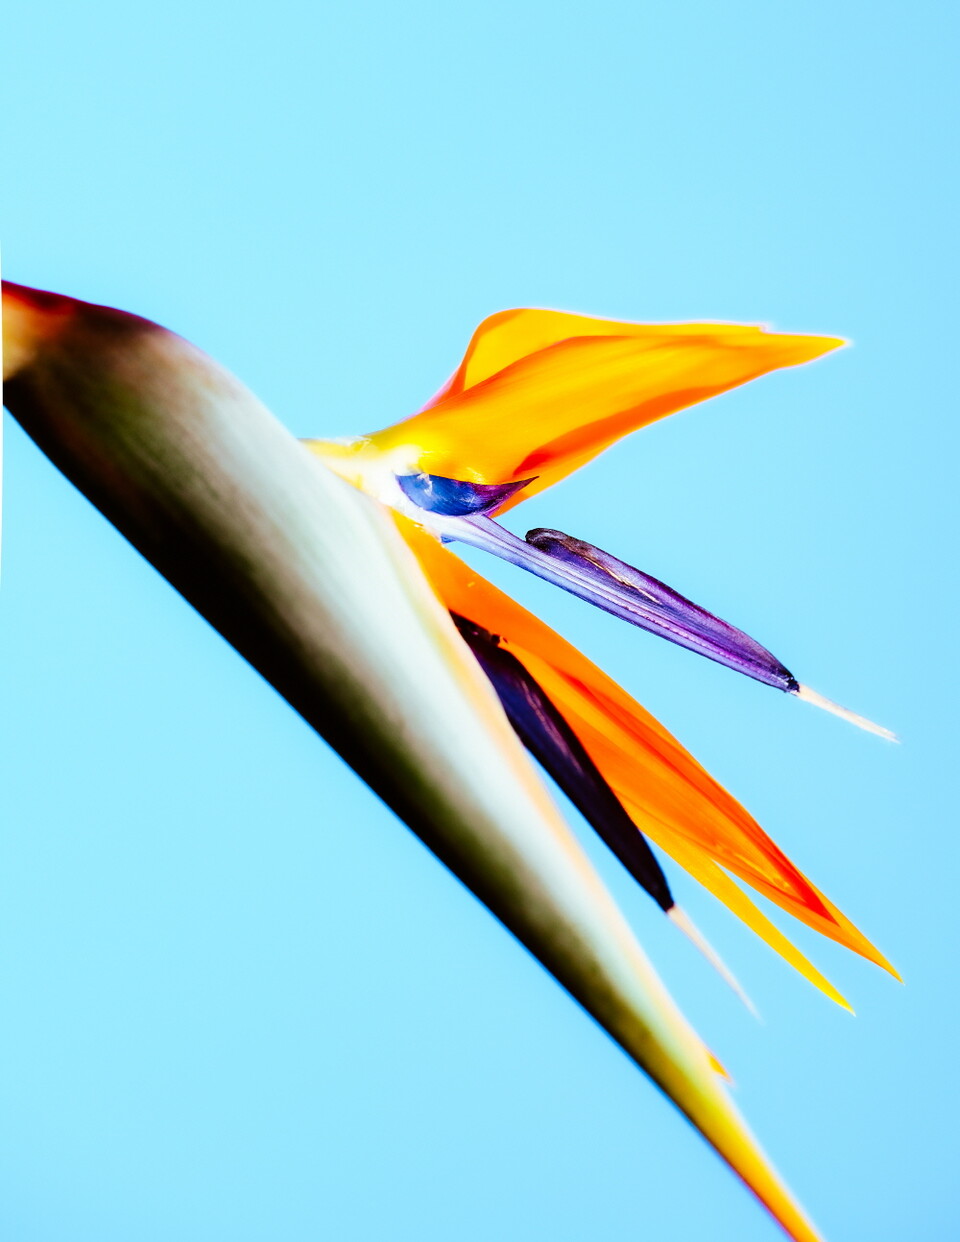 리젠트 푸꾸옥의 시그니처, 극락조화(Bird of Paradise). 꽃의 모양이 화려한 깃털을 가진새, ‘극락조’를 닮아 붙은 이름이다. 극락조화의 꽃말은 ‘영원과 신비’